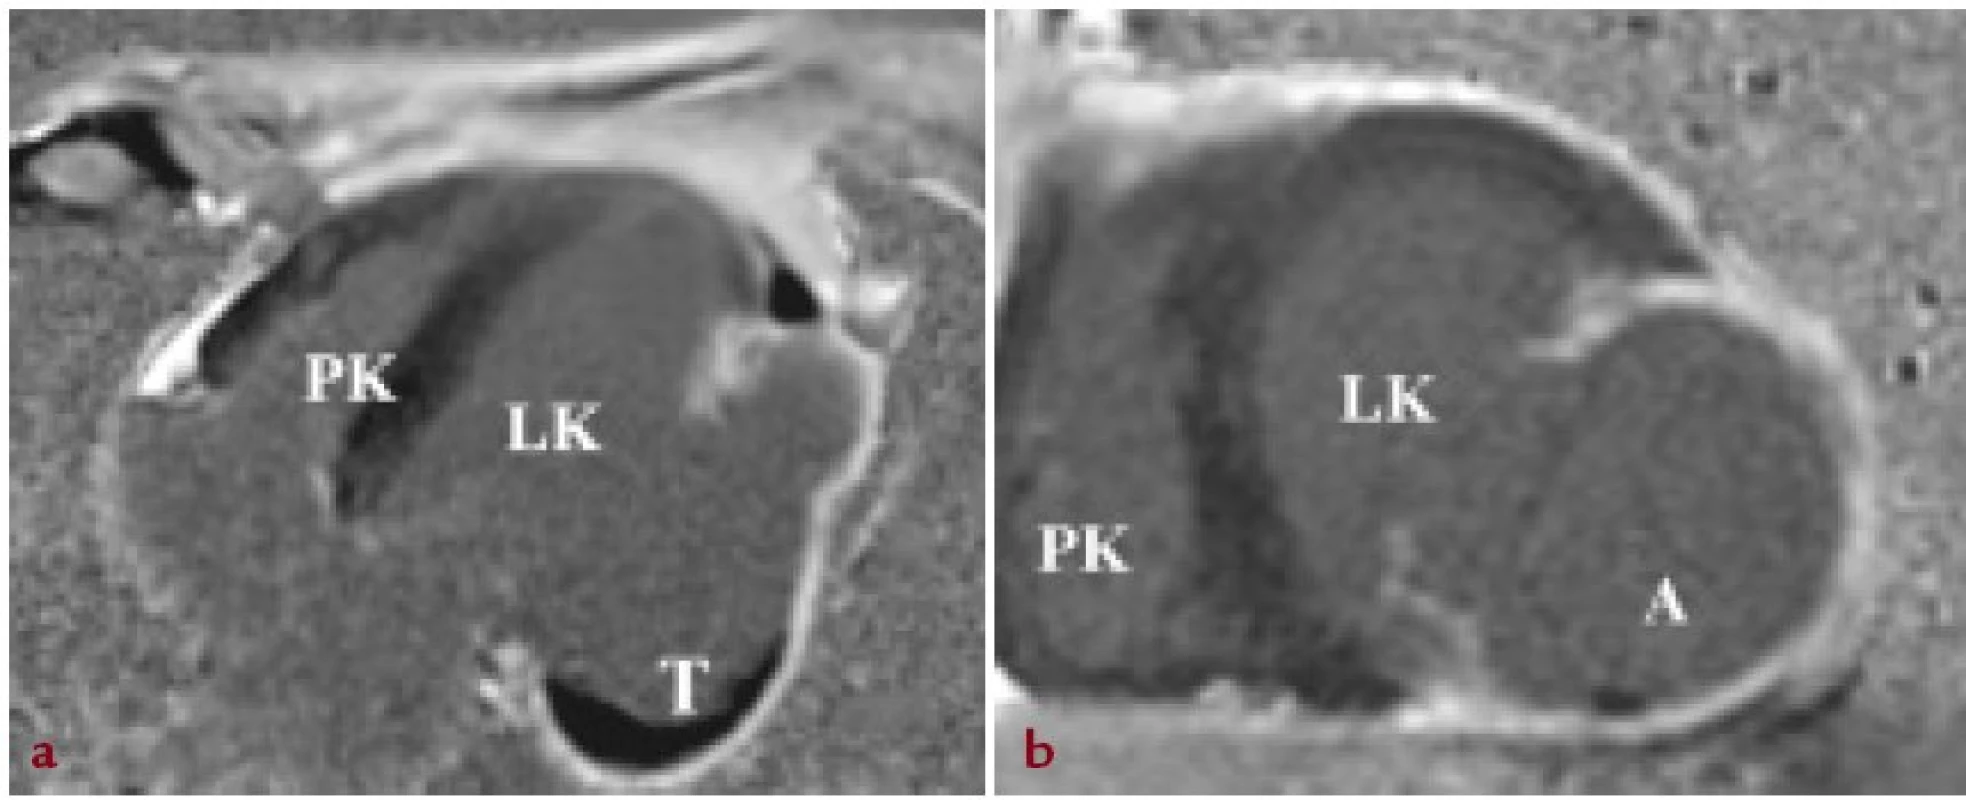 Zobrazení magnetickou rezonancí srdce. A: 4dutinová projekce na dlouhou osu levé komory srdeční s patrným objemným aneuryzmatem (A) ztenčené laterální stěny levé komory srdeční v kinematických sekvencích (TrueFISP CINE) s dyskinezí uvedených segmentů a patrným nástěnným trombem v bazálních segmentech aneuryzmatu (T). V kontrastním zobrazení (Gadolinium- DTPA) patrné pozdní sycení stěny v celém rozsahu aneuryzmatu odpovídající transmurální jizvě. B: zobrazení levé komory srdeční v krátké ose.